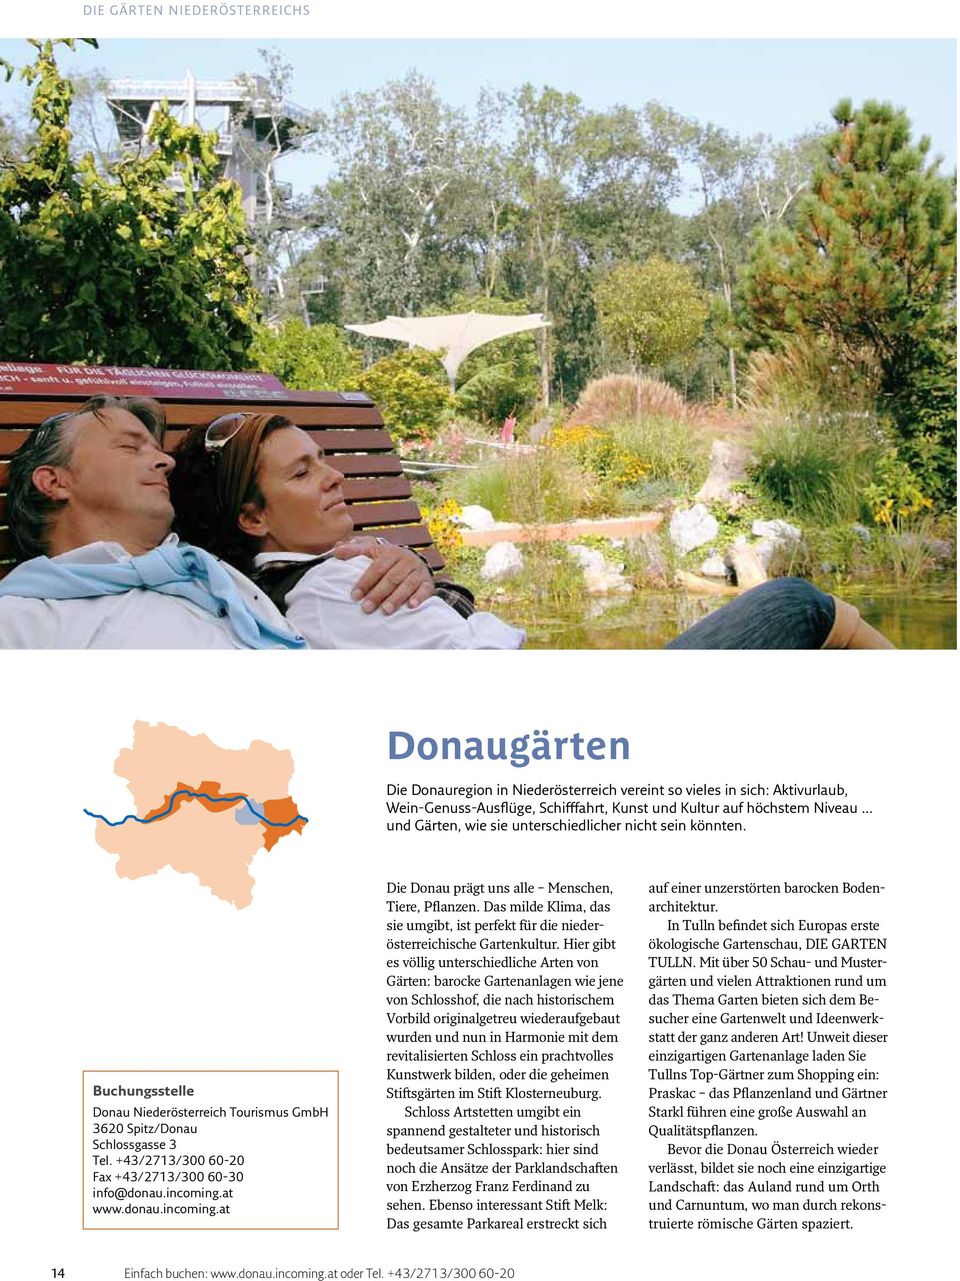 incoming.at www.donau.incoming.at Die Donau prägt uns alle Menschen, Tiere, Pflanzen. Das milde Klima, das sie umgibt, ist perfekt für die niederösterreichische Gartenkultur.